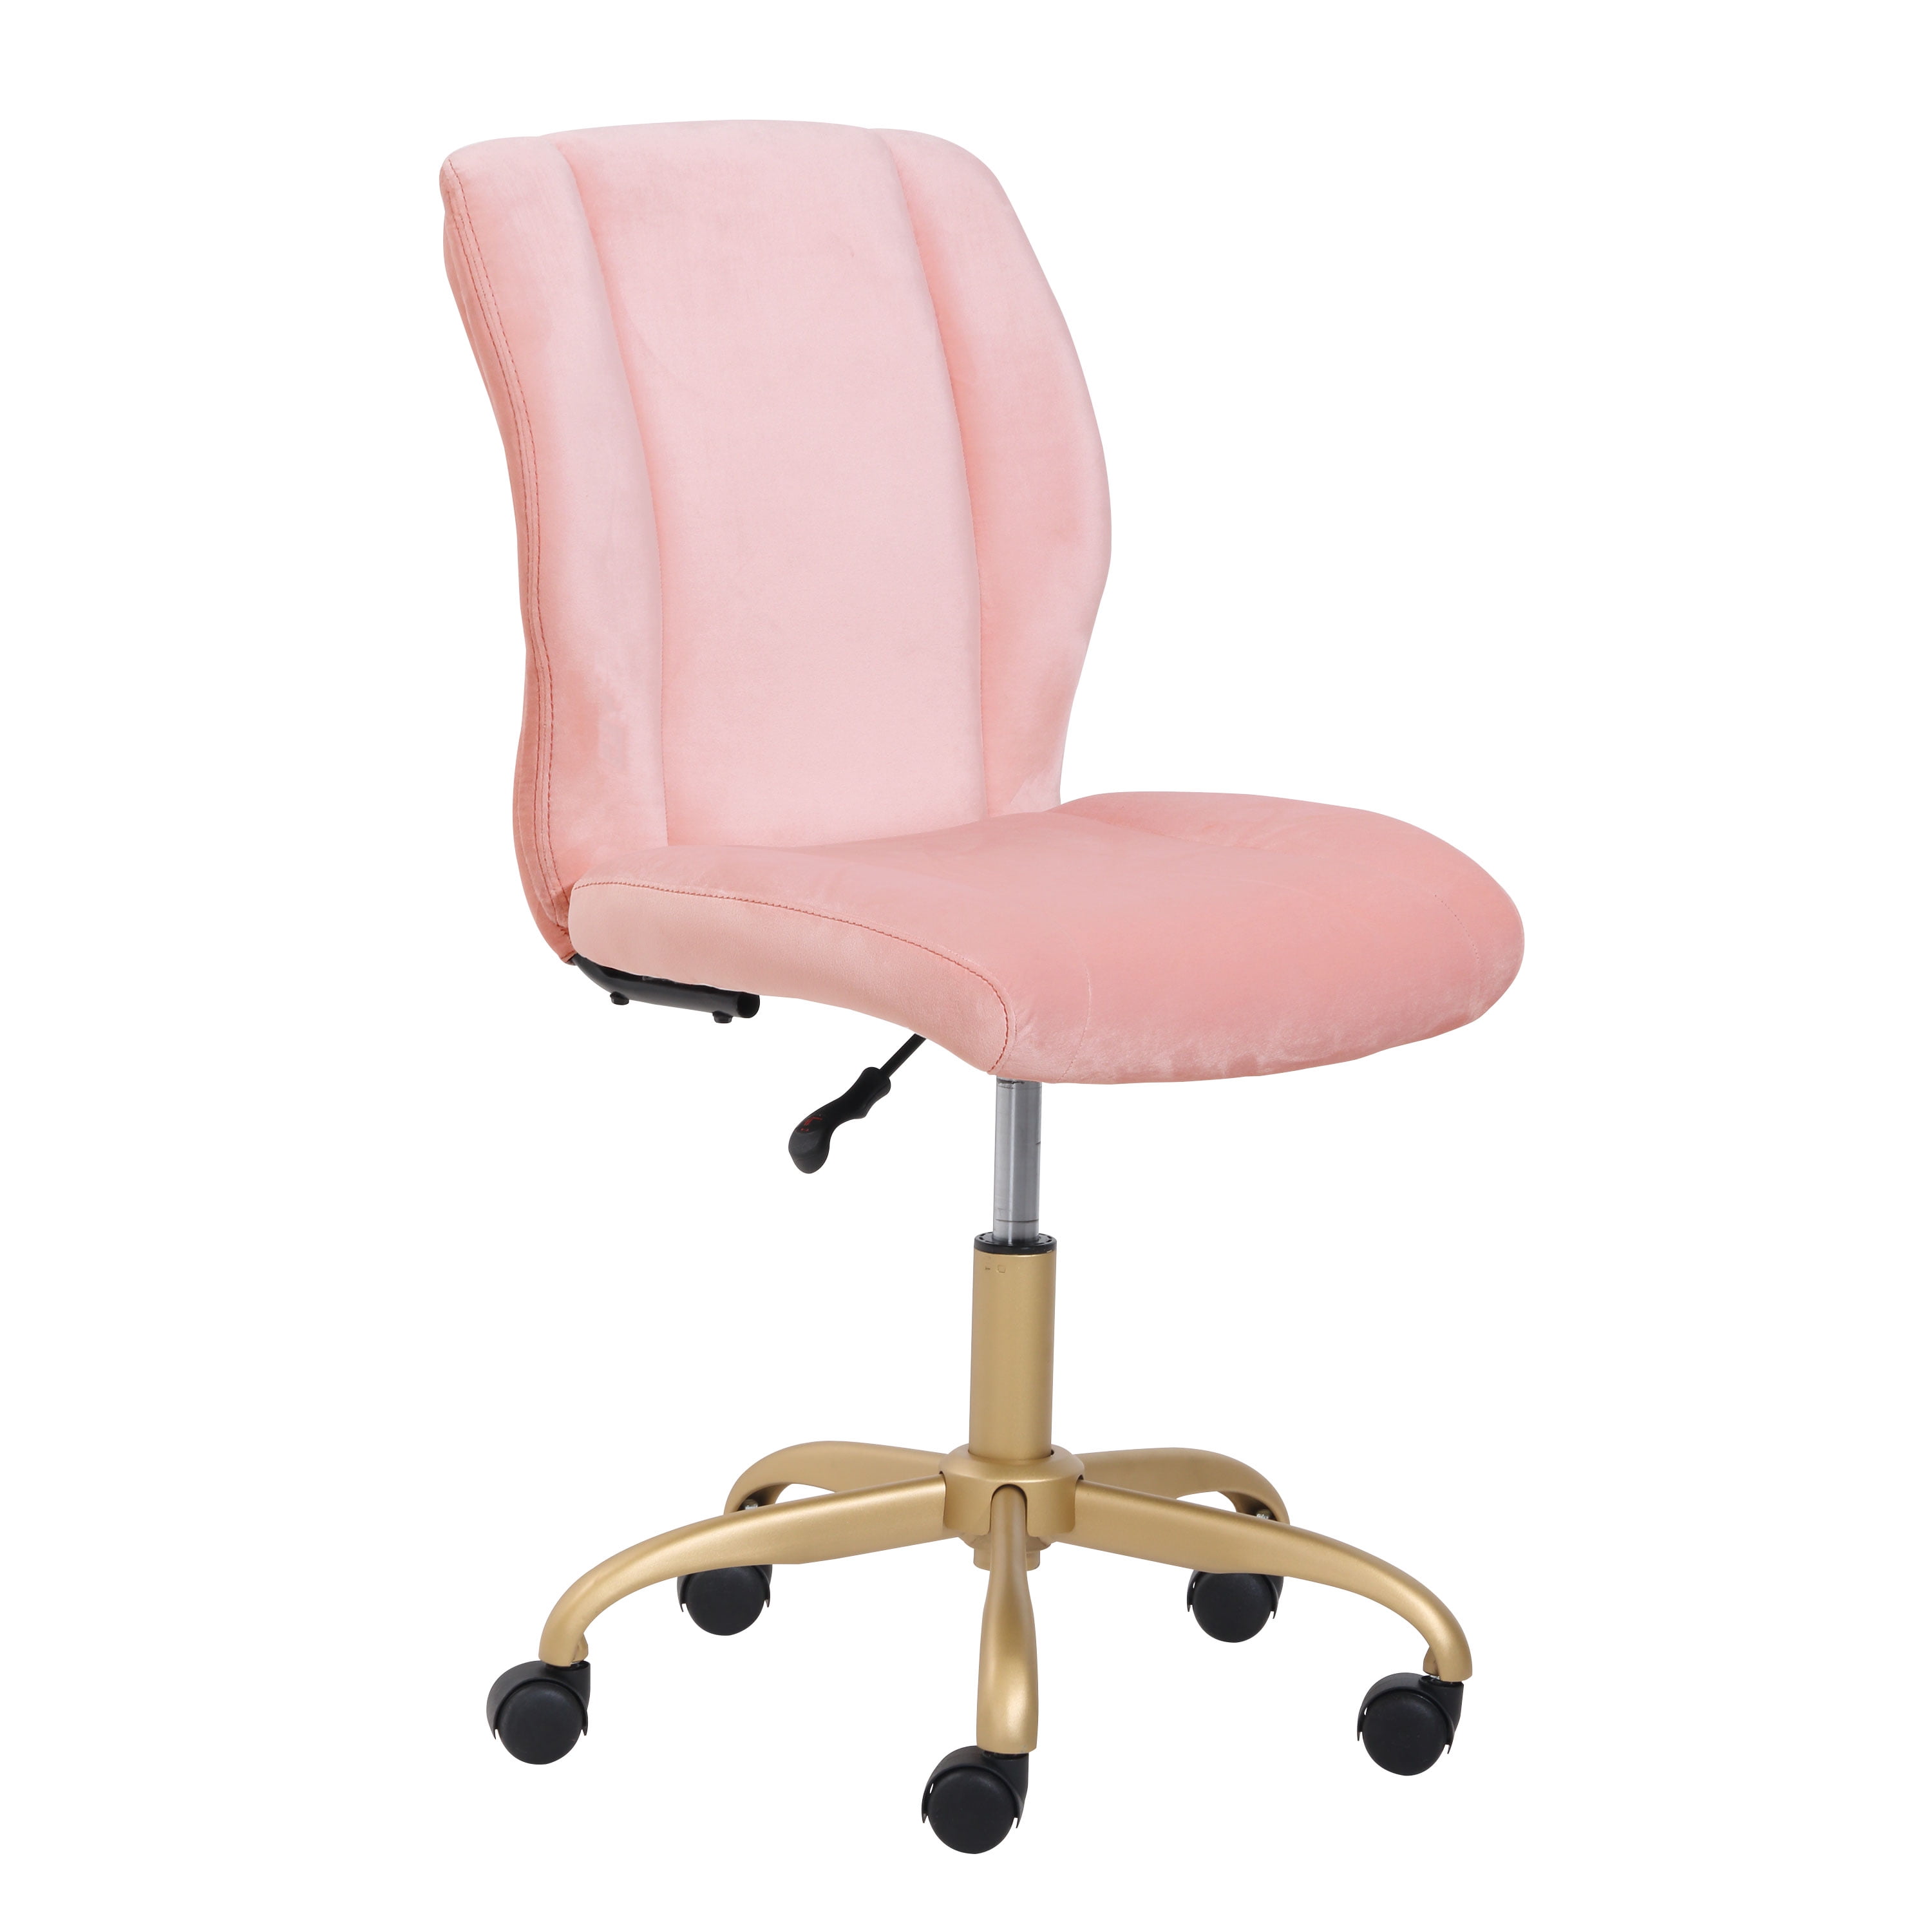 Mainstays Plush Velvet Office Chair, Pearl Blush - image 1 of 10